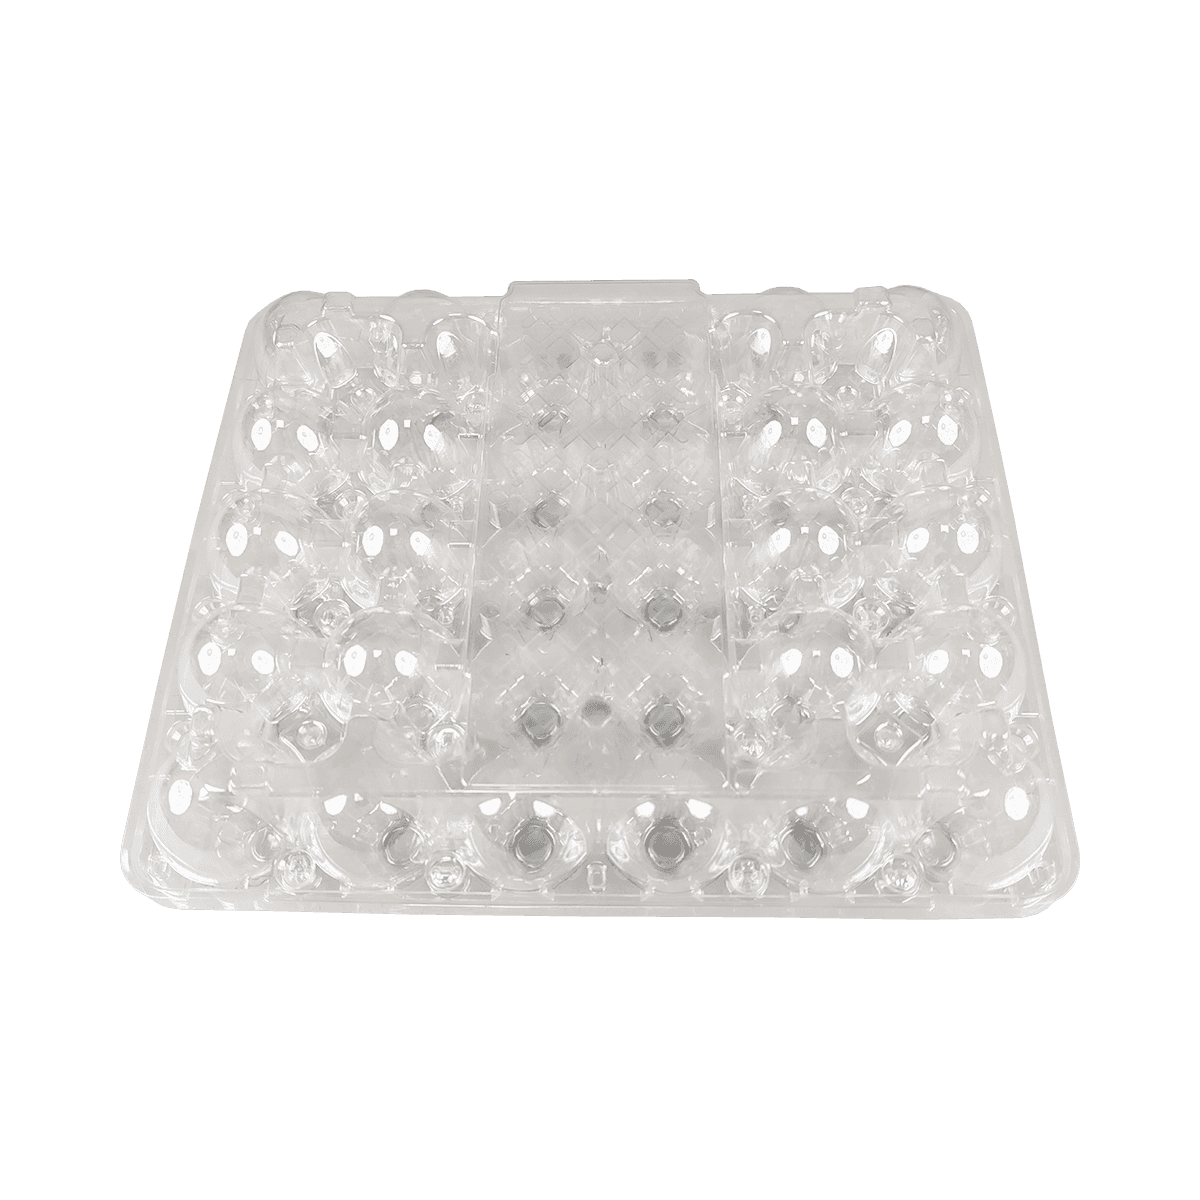 Almacenamiento cómodo y seguro de cartones de huevos PET transparentes de 30